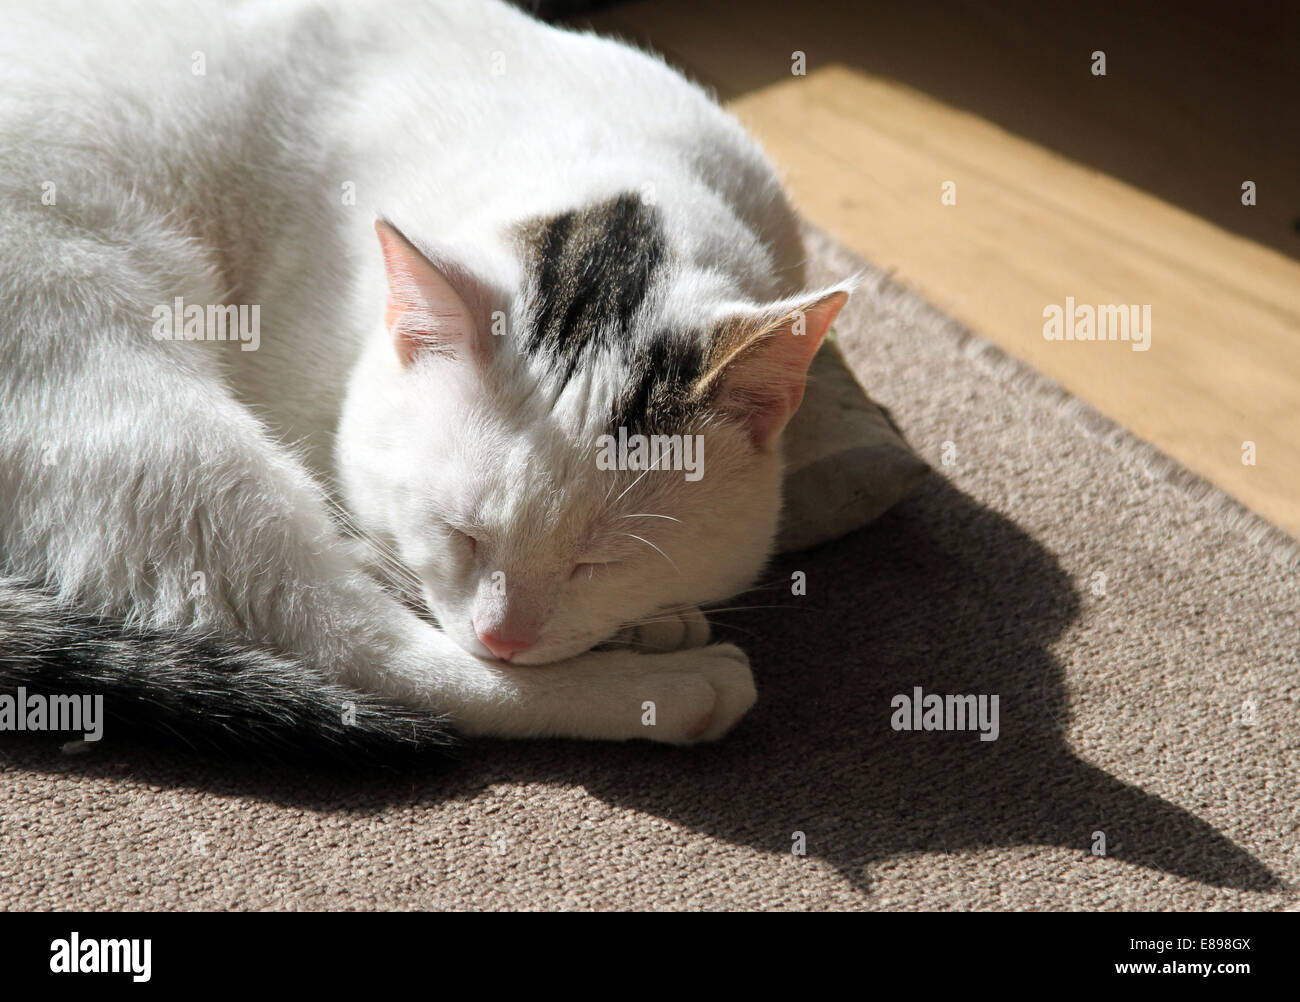 Nouveau Hagen, Allemagne, un chat dort recroquevillé dans la lumière du soleil Banque D'Images